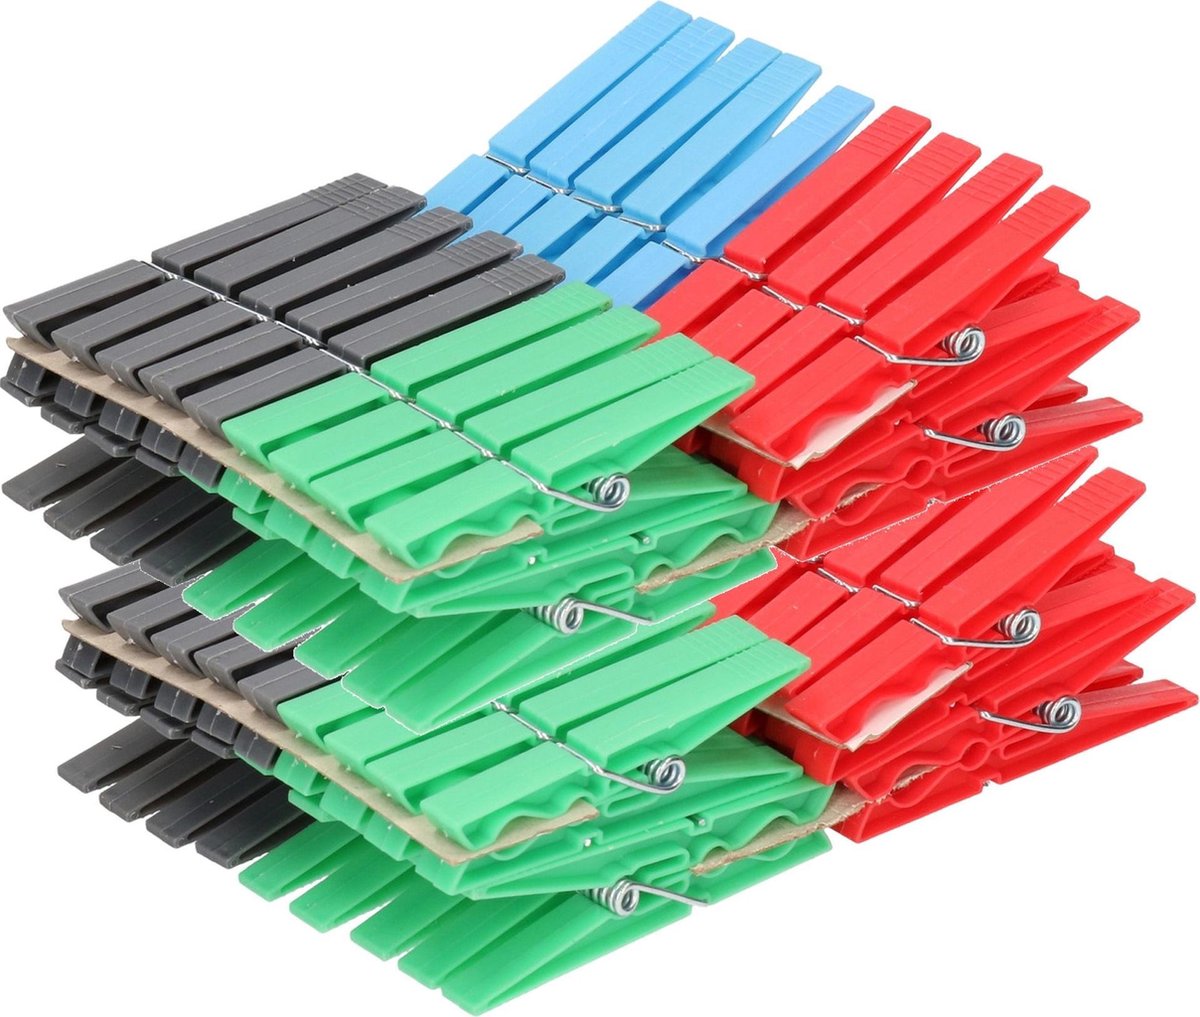 108x Gekleurde wasknijpers - Plastic wasgoedknijpers - Knijpers/wasspelden voor wasgoed 108 stuks